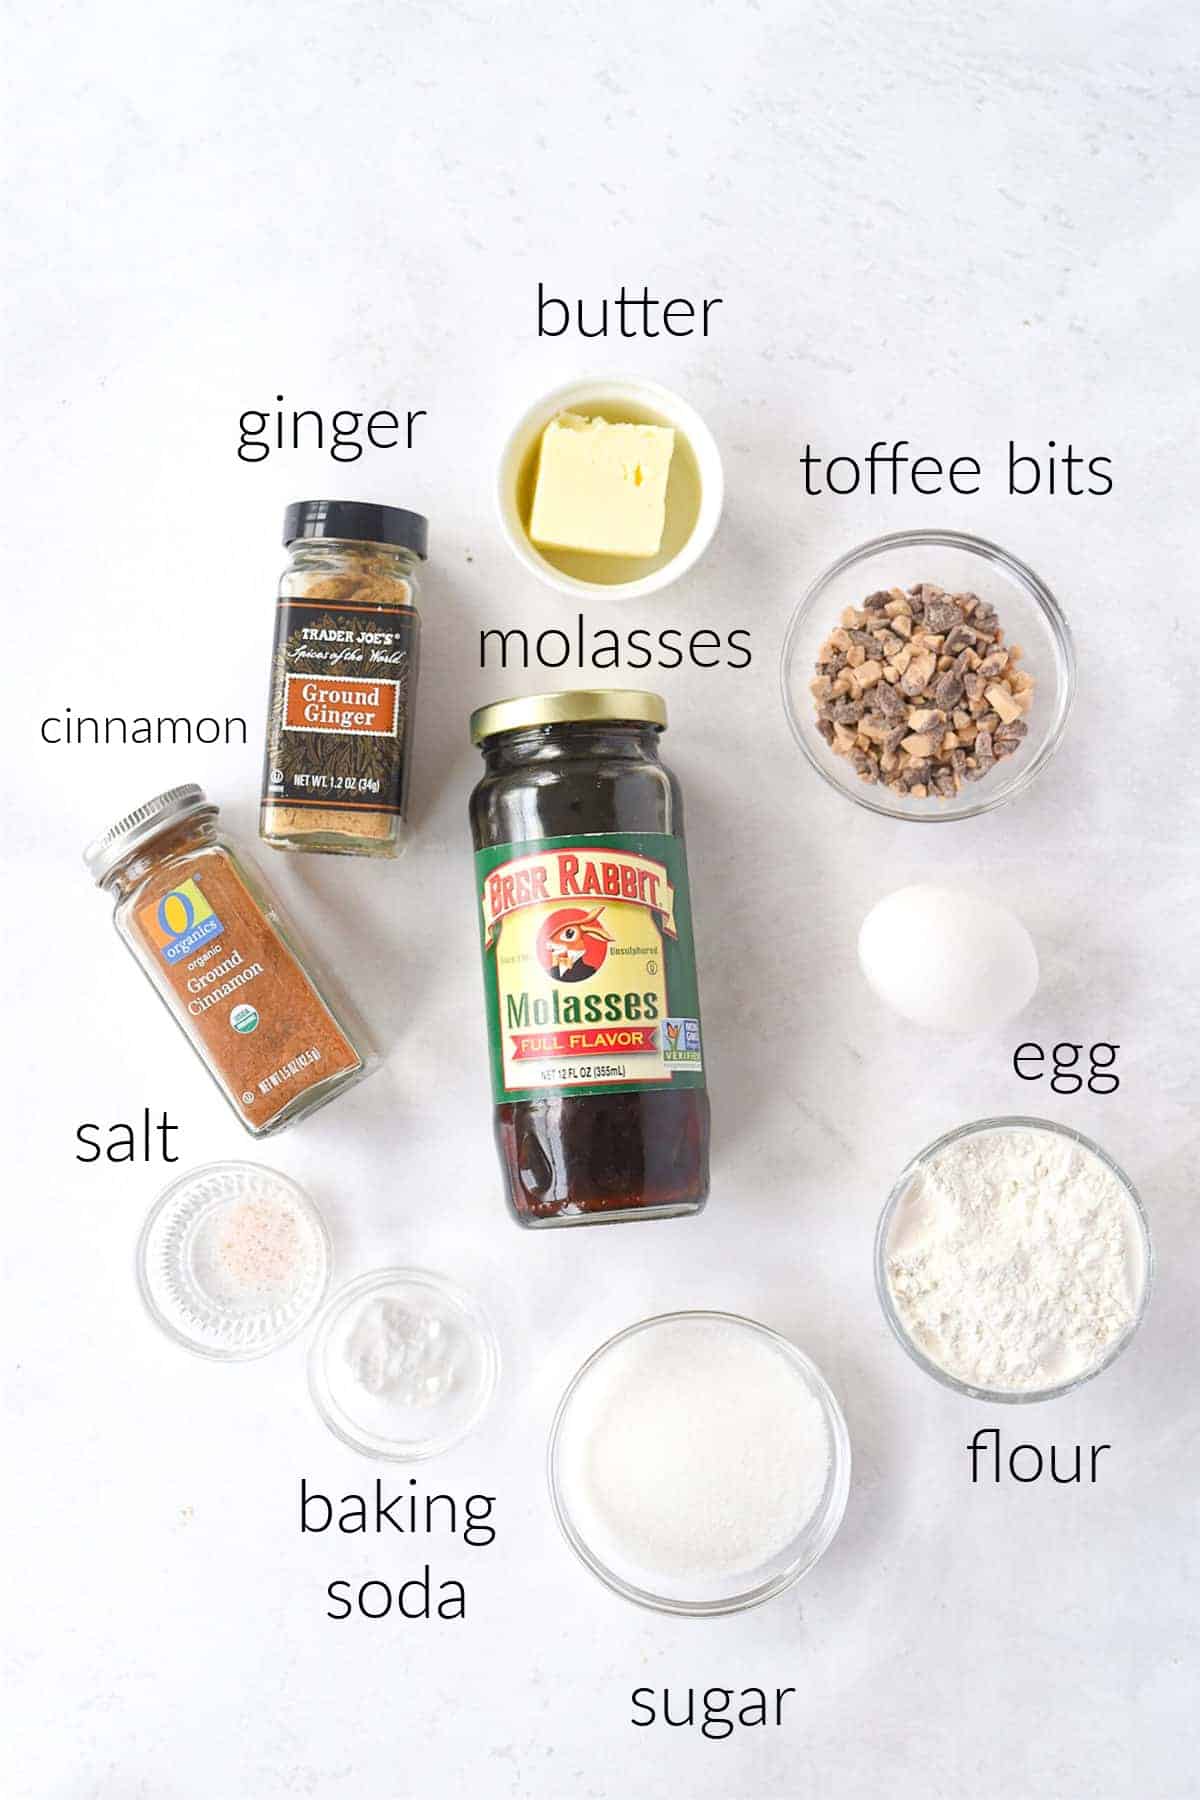 gingersnap ingredient photo